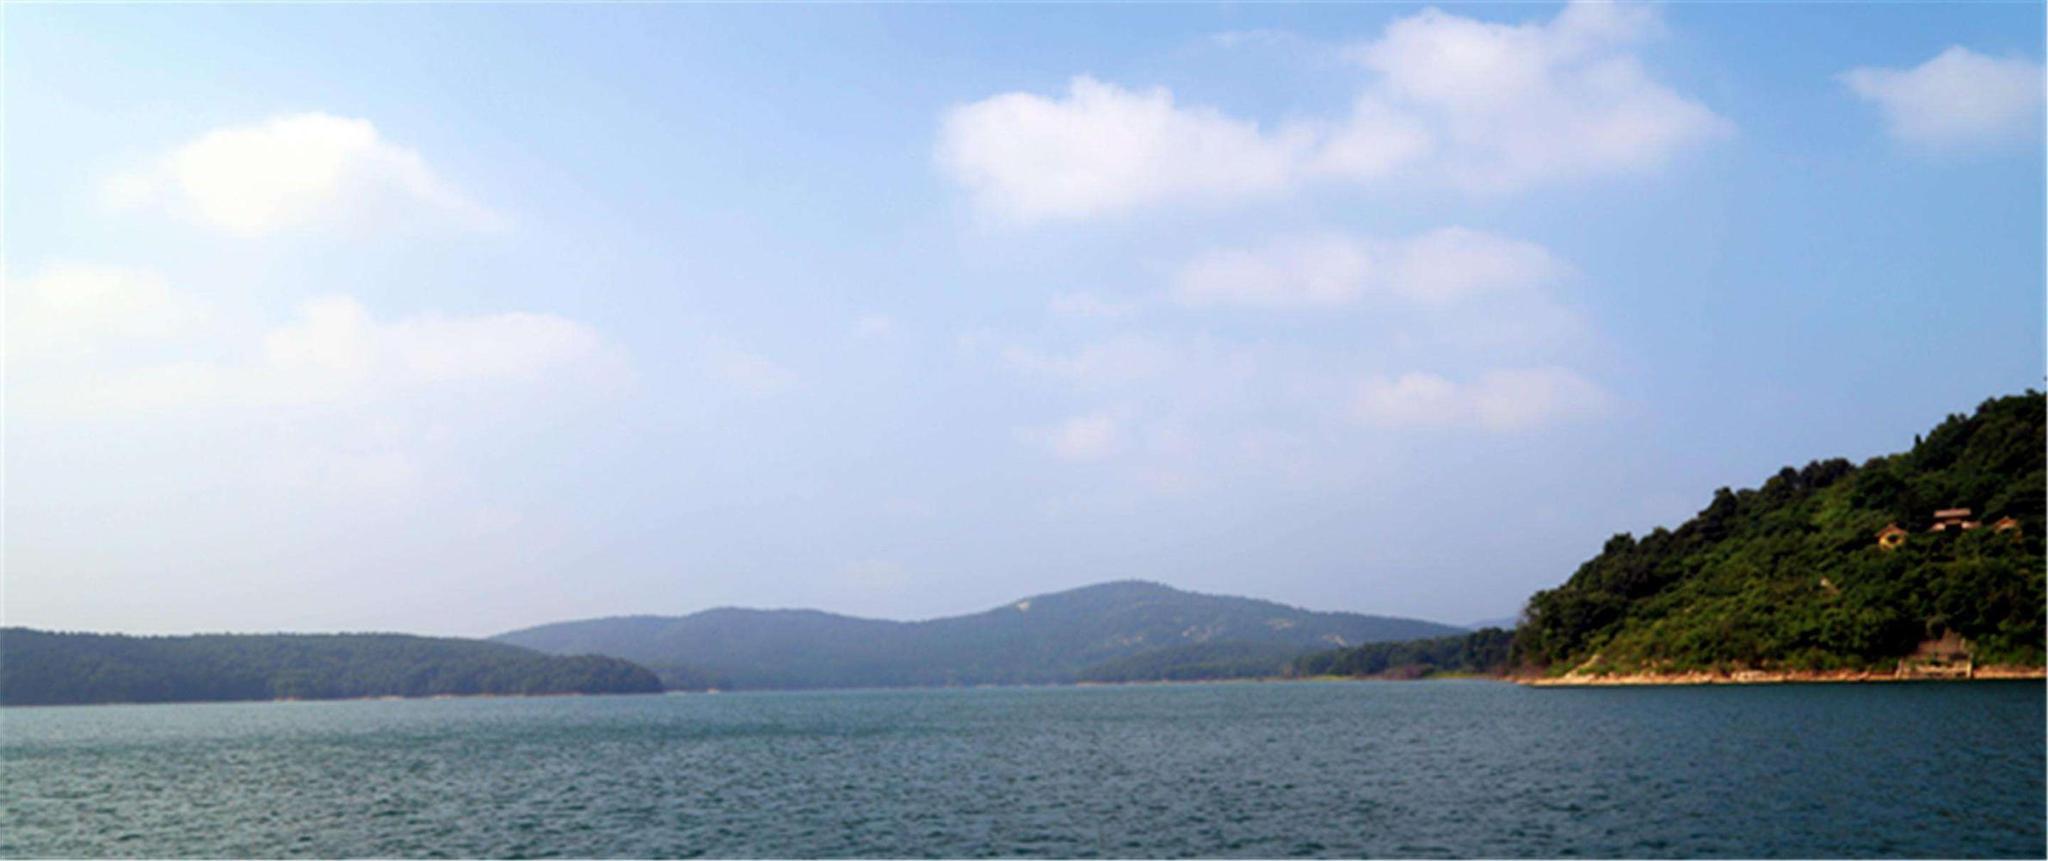 薄山湖风景区位于驻马店确山县城南20公里处,距京广铁路,京珠高速